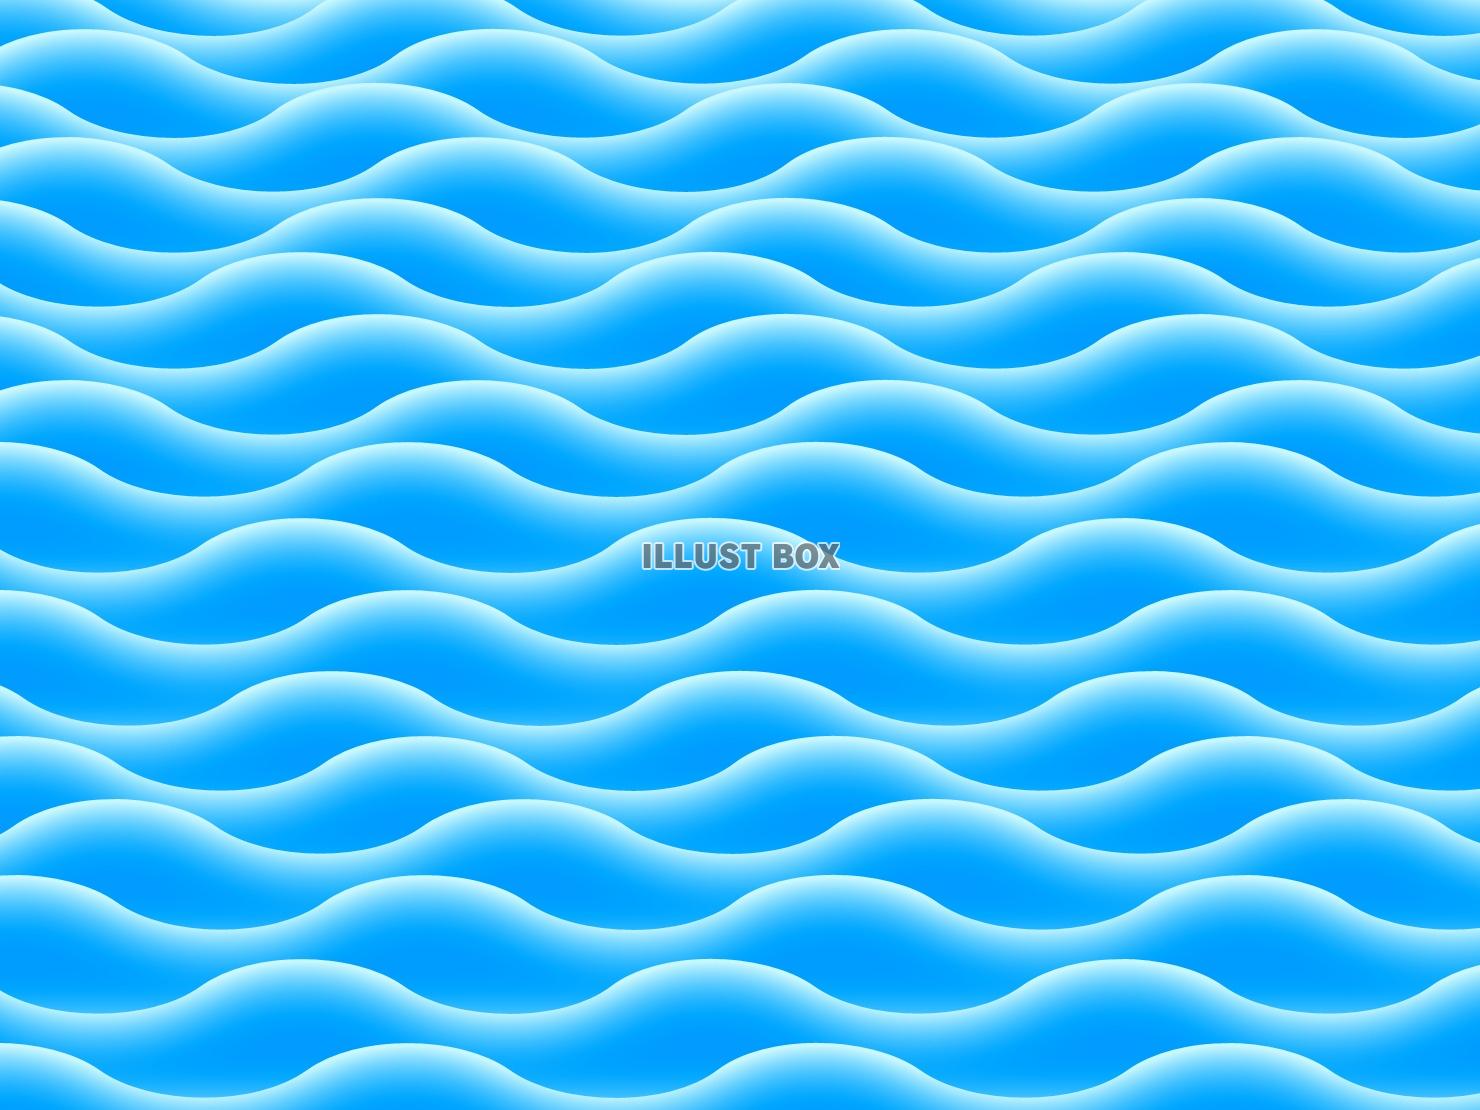 海面の壁紙画像、波の風景背景素材イラスト